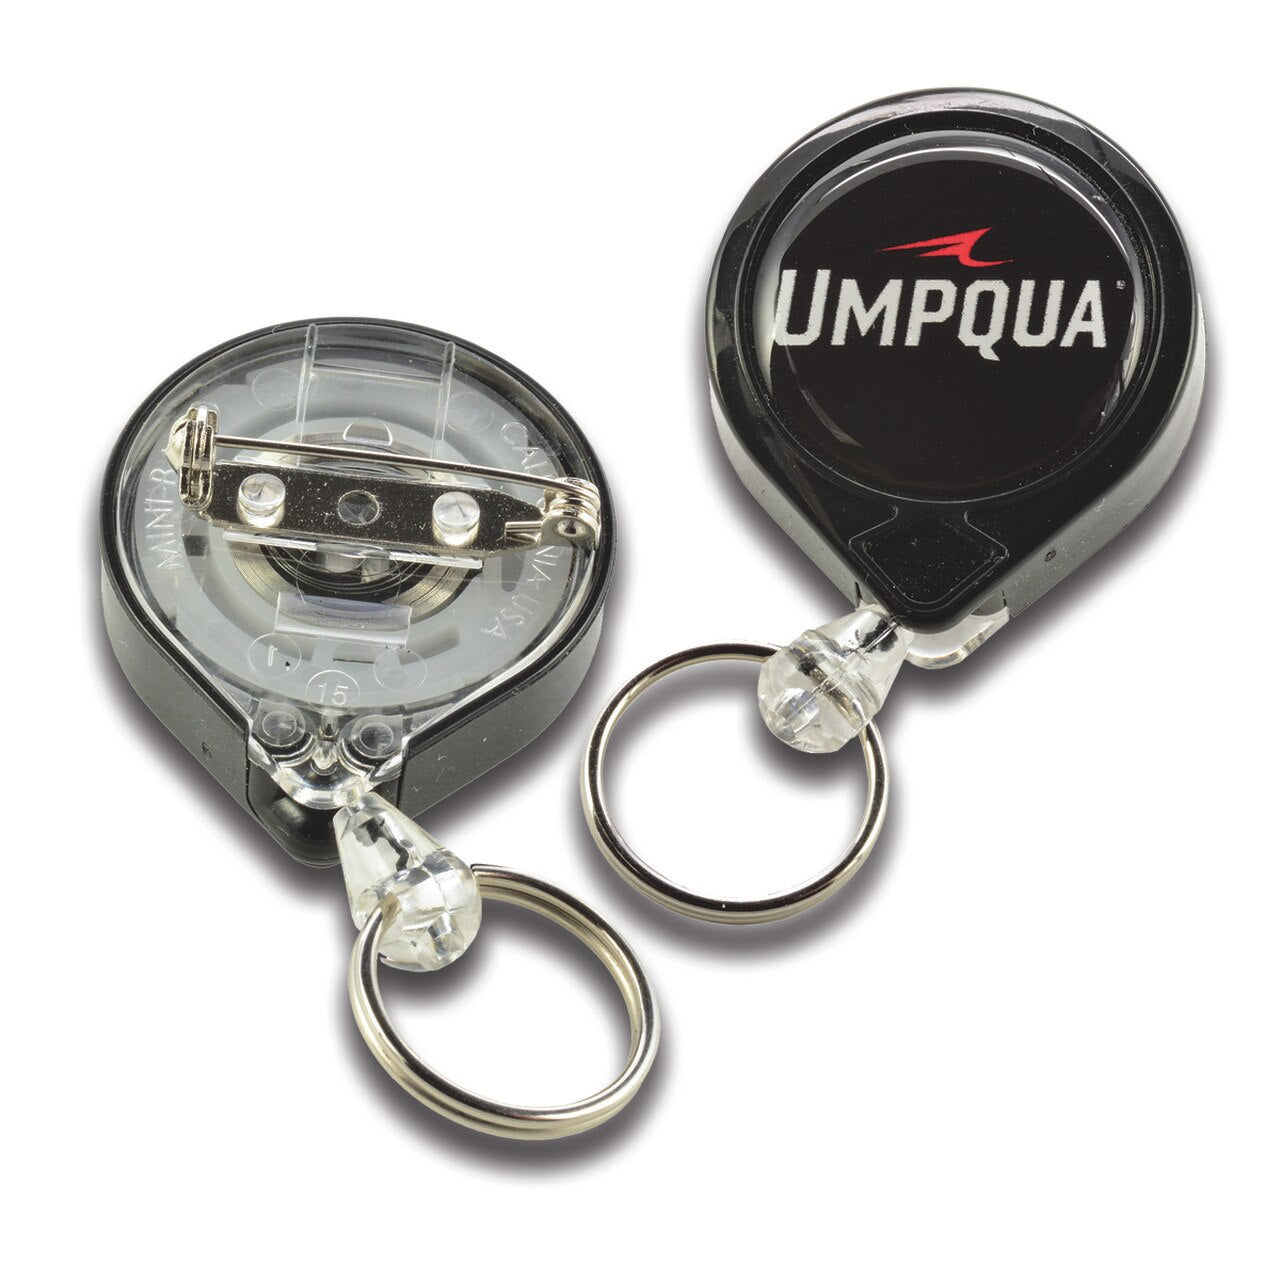 Umpqua Pin On Zinger